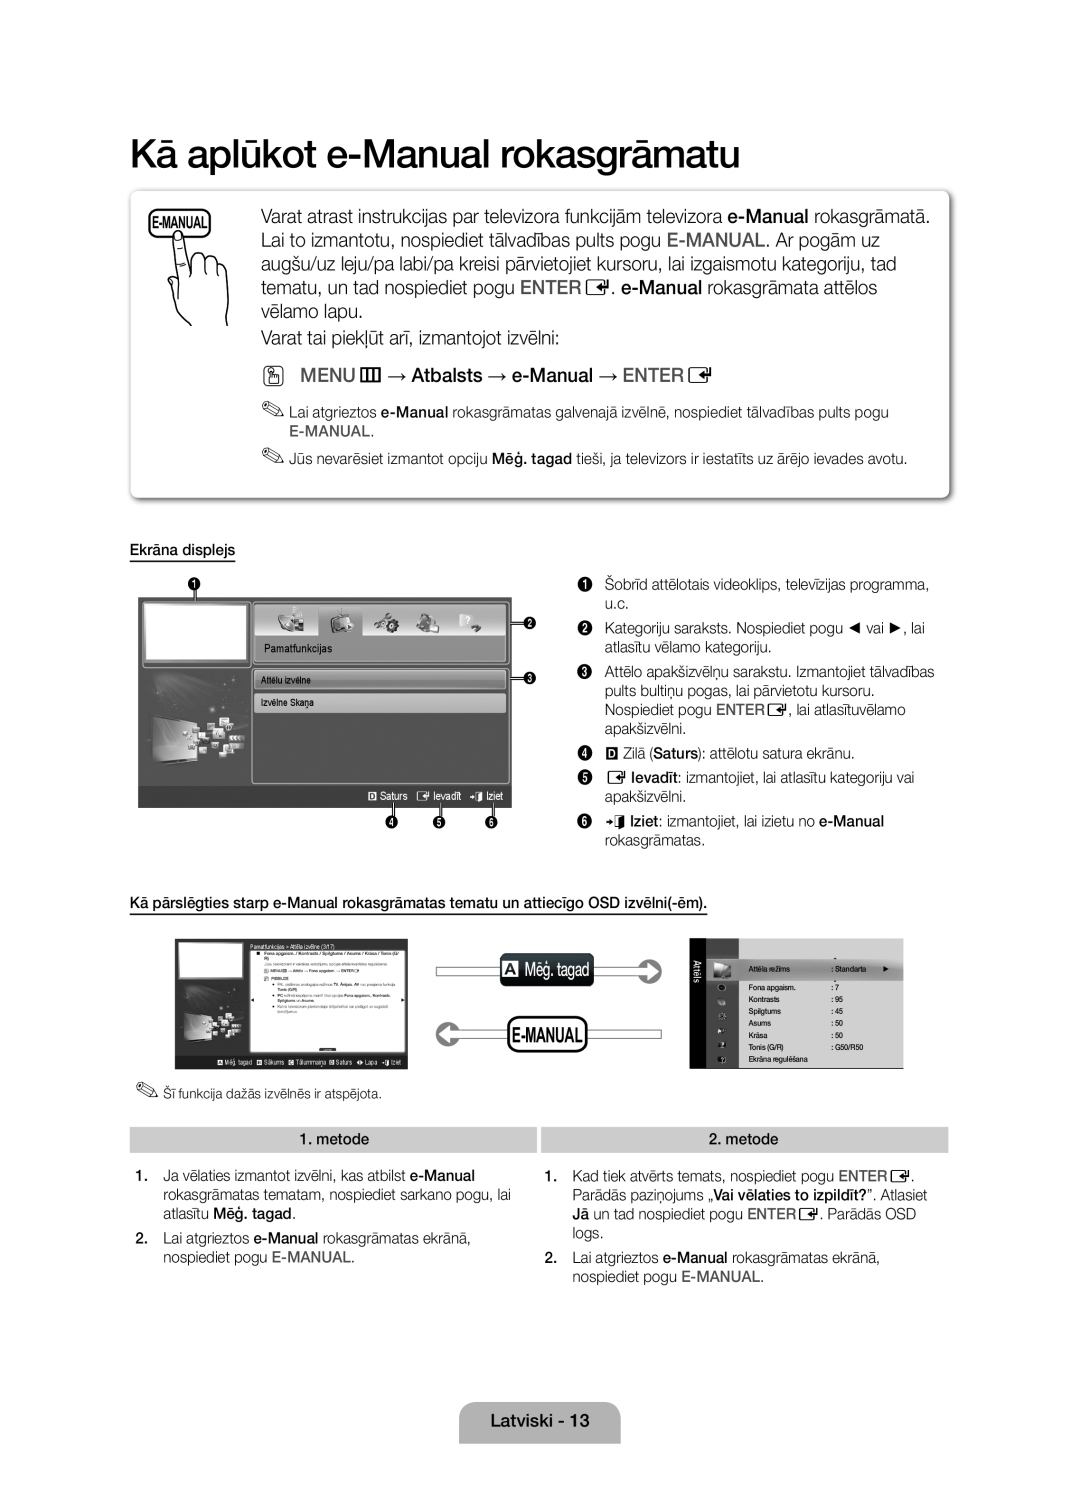 Samsung UE46D5000PWXXH Kā aplūkot e-Manual rokasgrāmatu, vēlamo lapu, Varat tai piekļūt arī, izmantojot izvēlni, E-Manual 